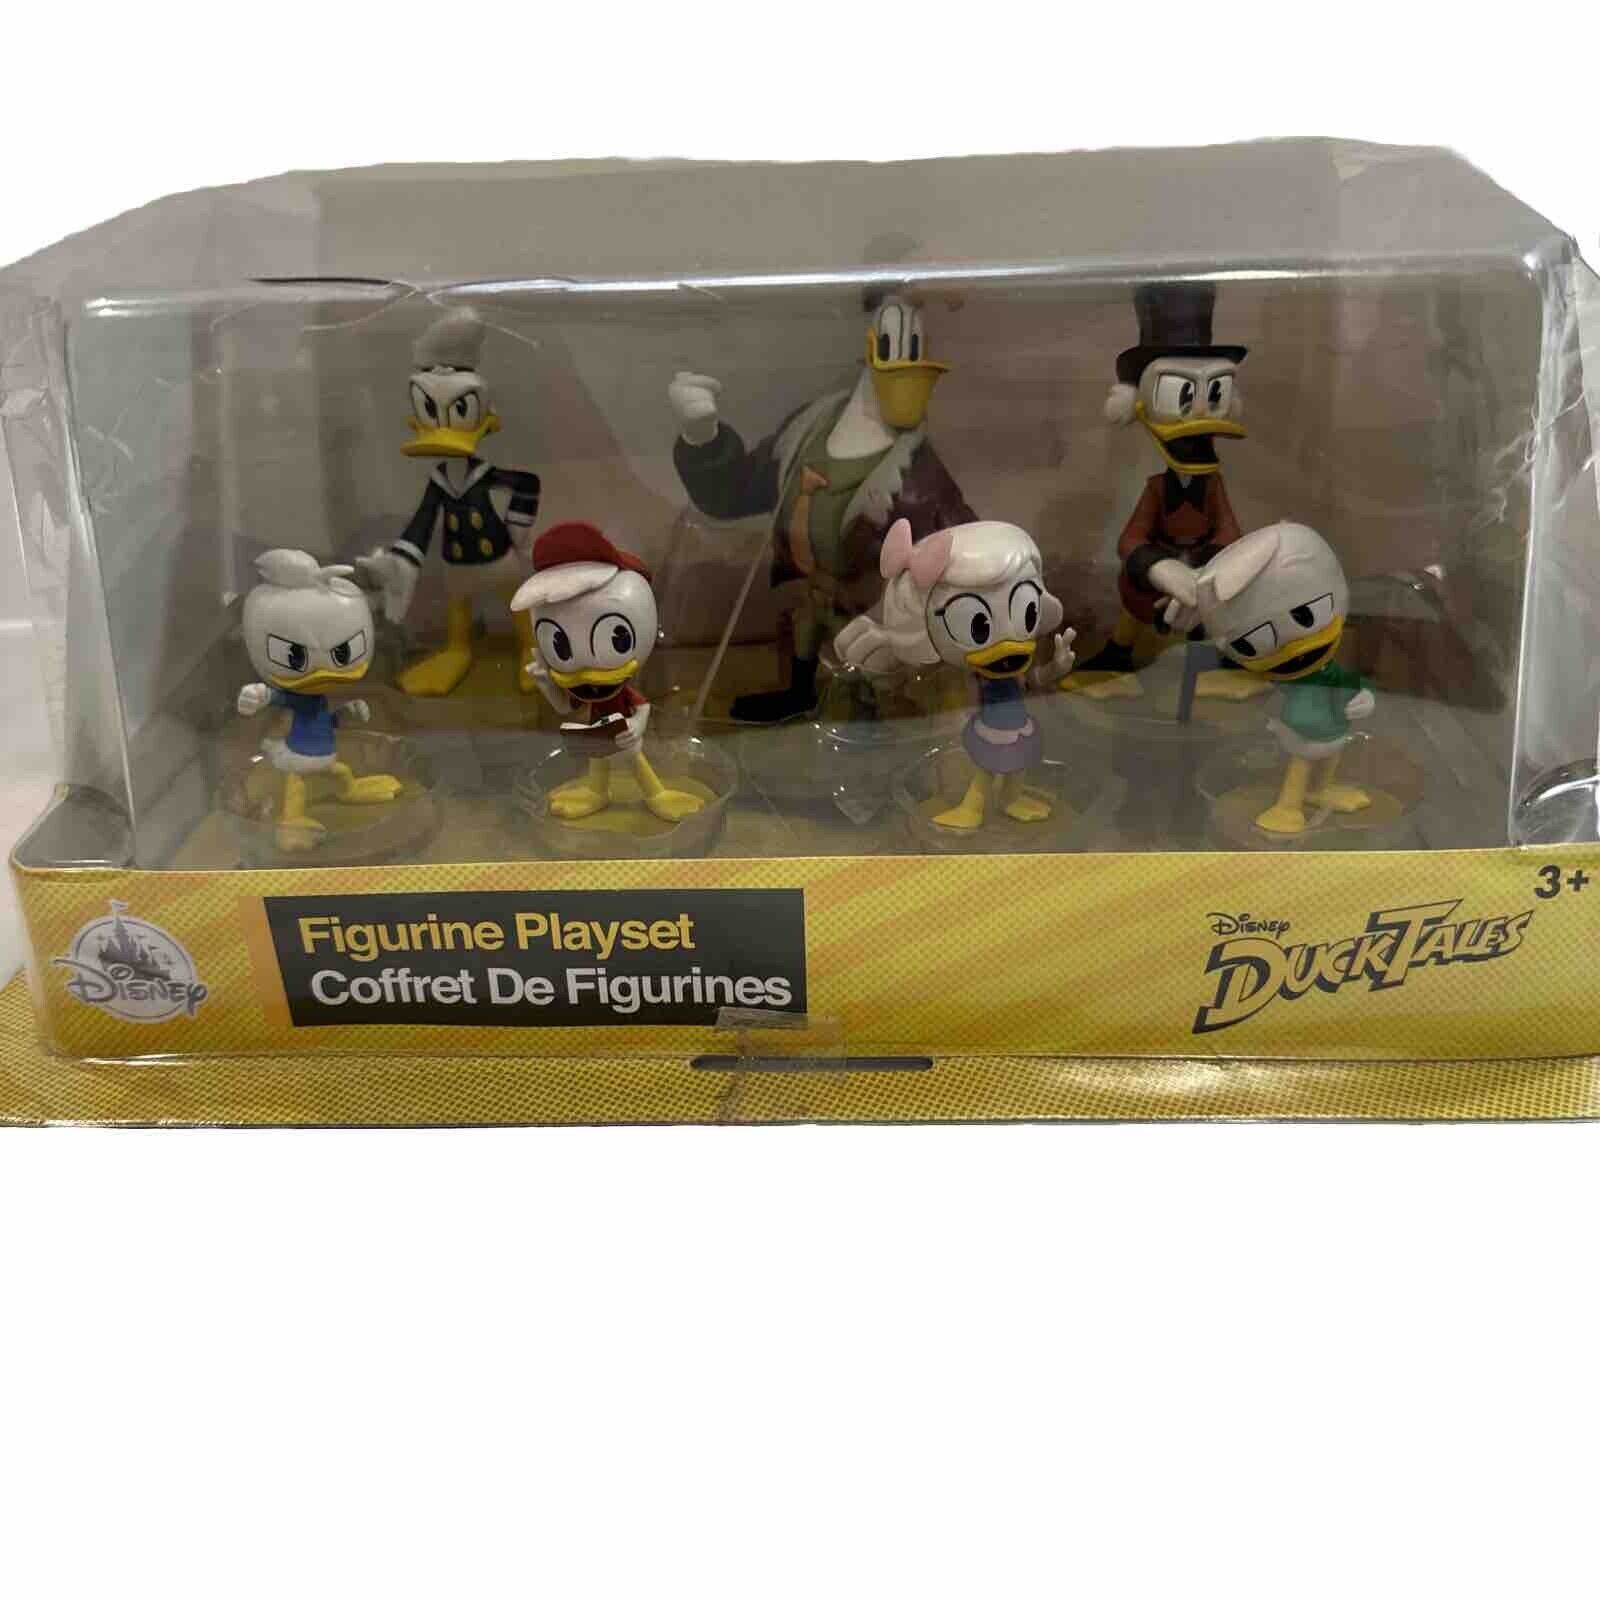 Disney DuckTales Figurine Playset Disney Store Figures